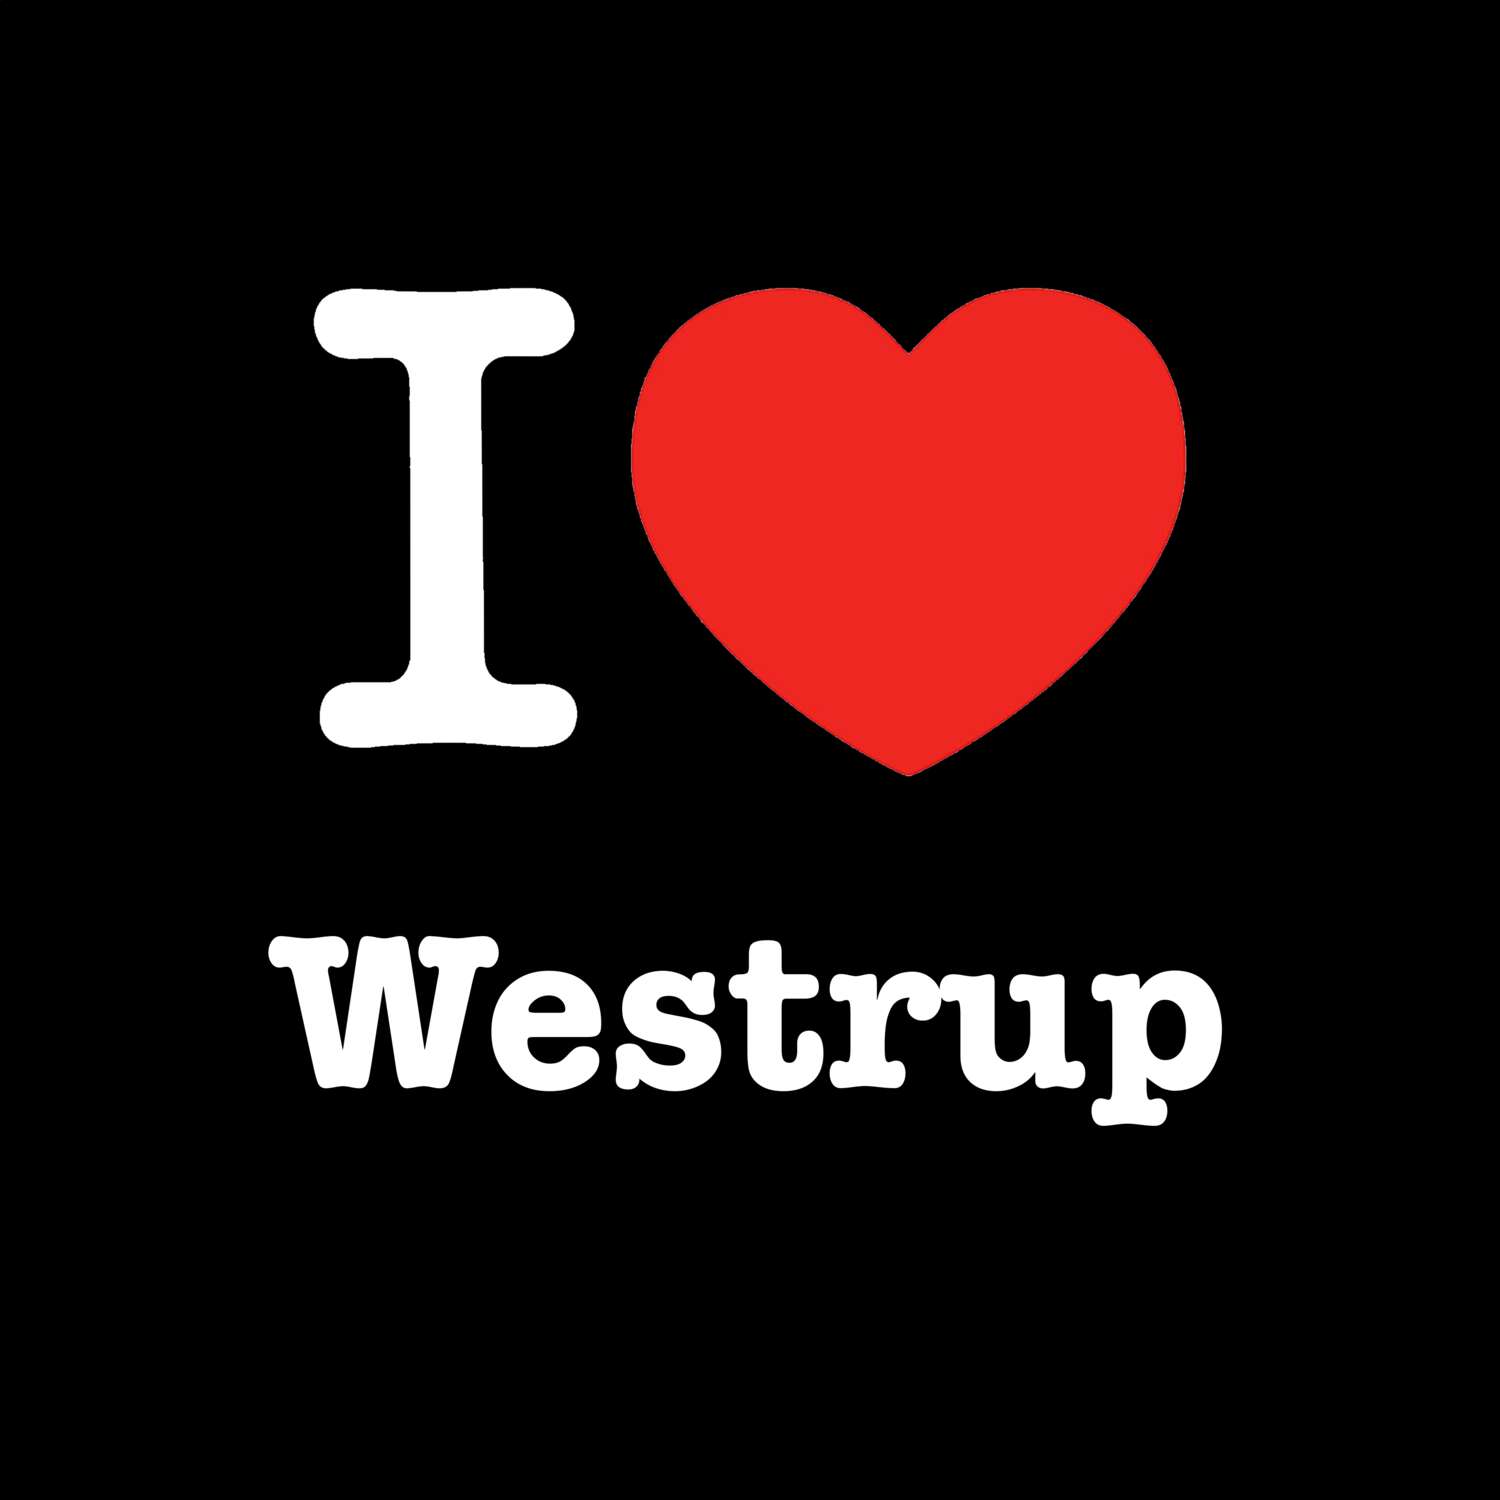 Westrup T-Shirt »I love«